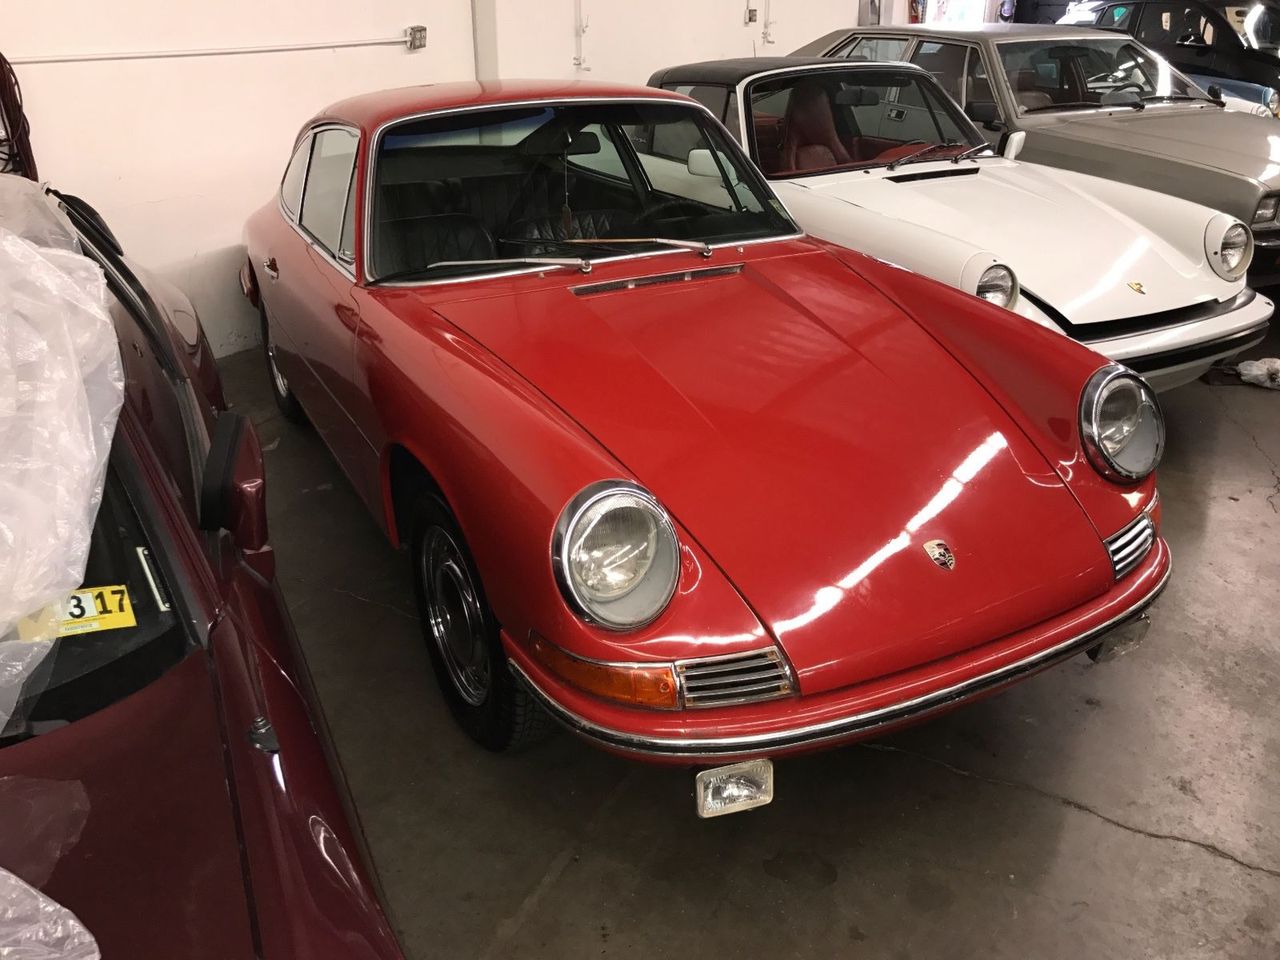 52-letnie Porsche, które większość życia spędziło w garażu